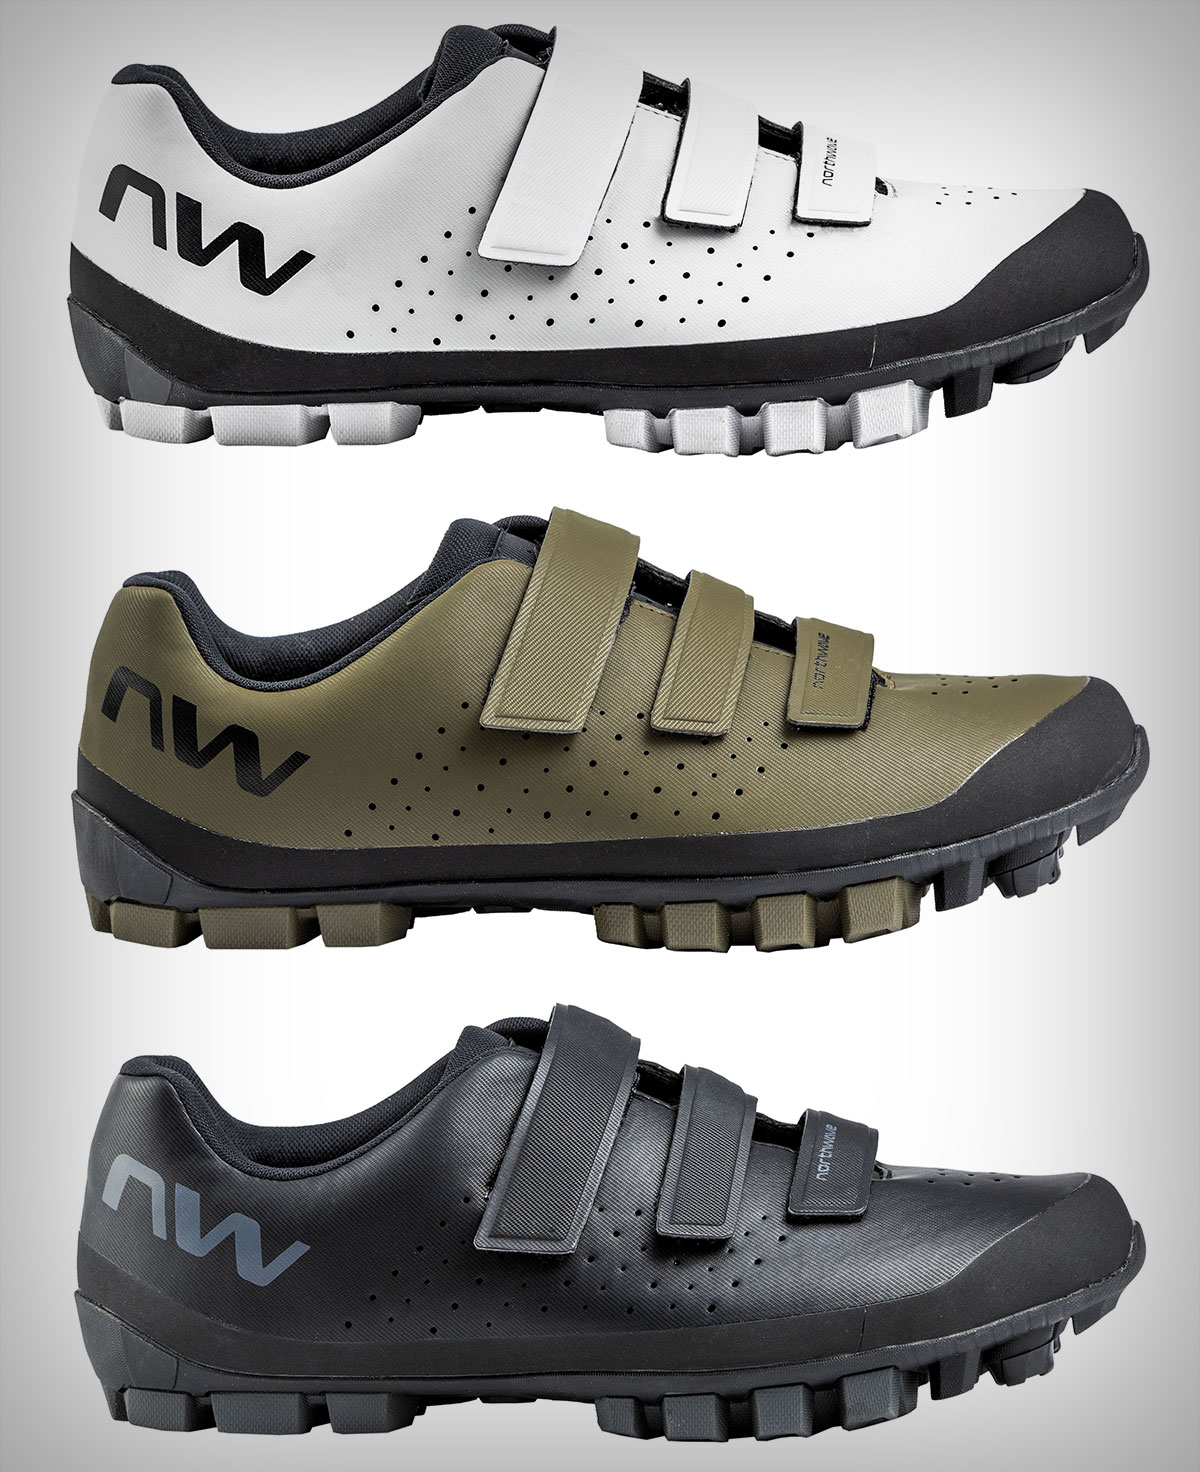 Northwave Hammer Plus, unas polivalentes zapatillas que llevan el rendimiento del XC al mundo del gravel